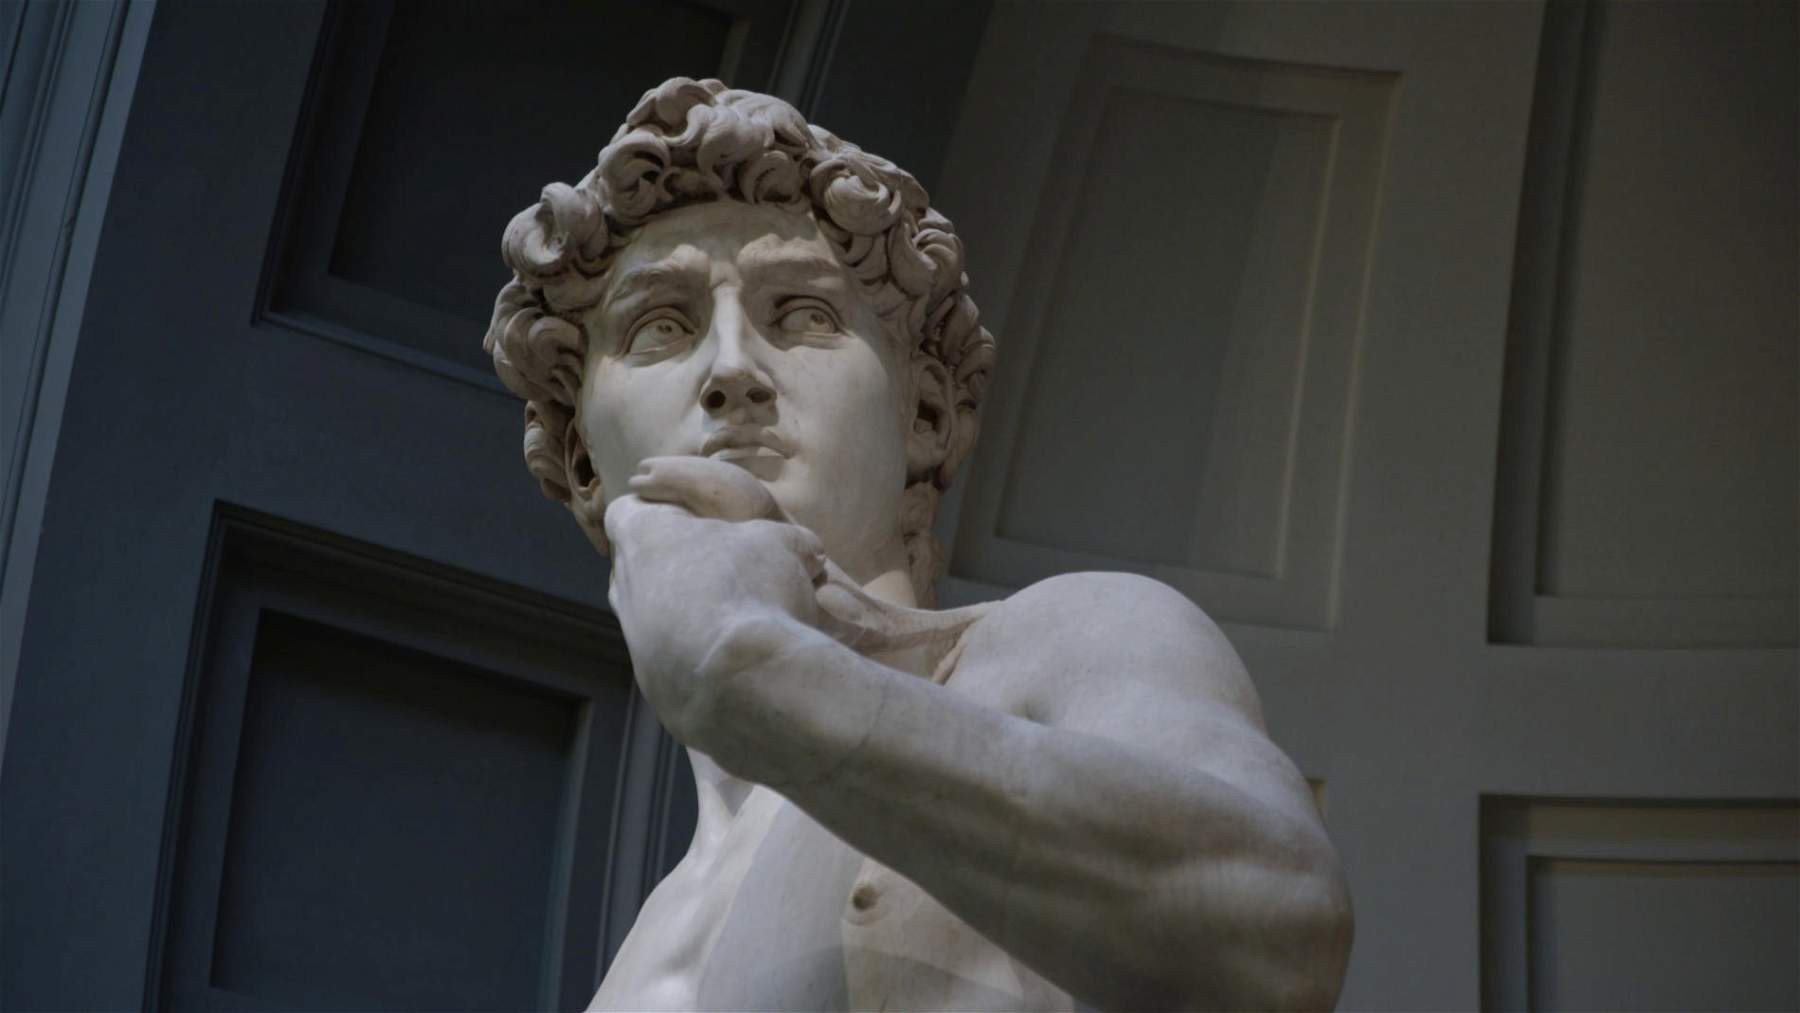 Le sculture di David a Firenze: un documentario racconta tutti i David del capoluogo toscano